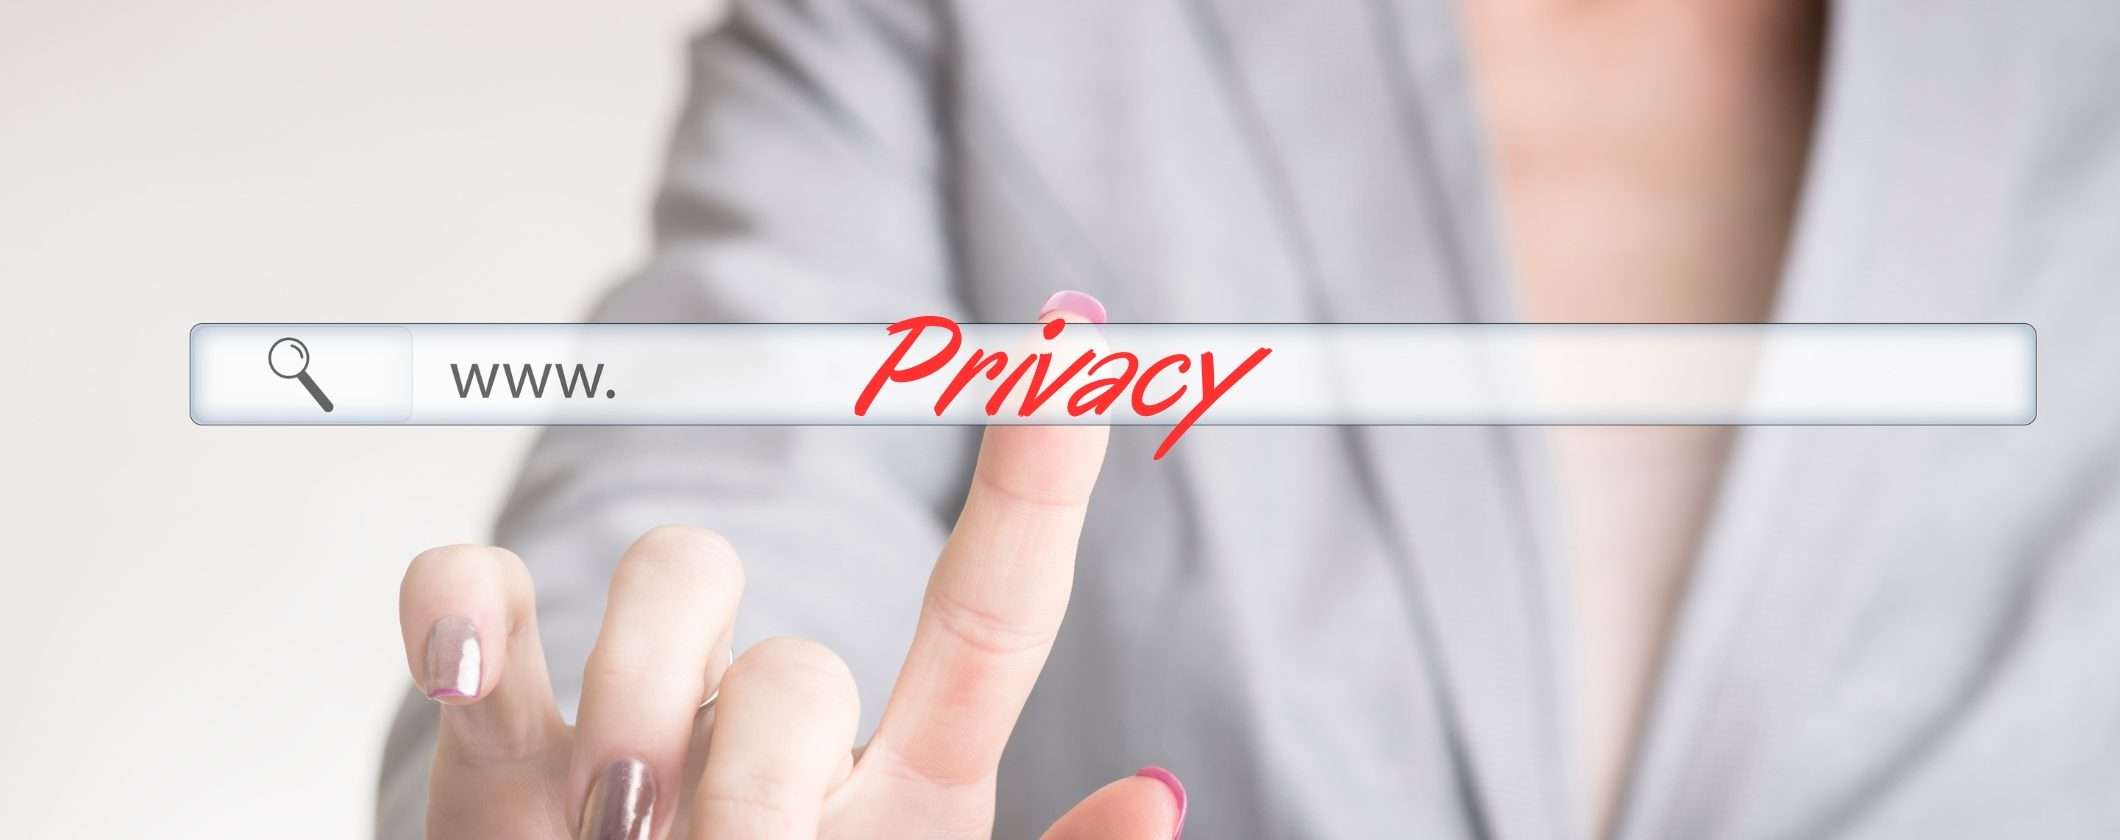 Smetti di essere tracciato: scopri come potenziare la tua privacy